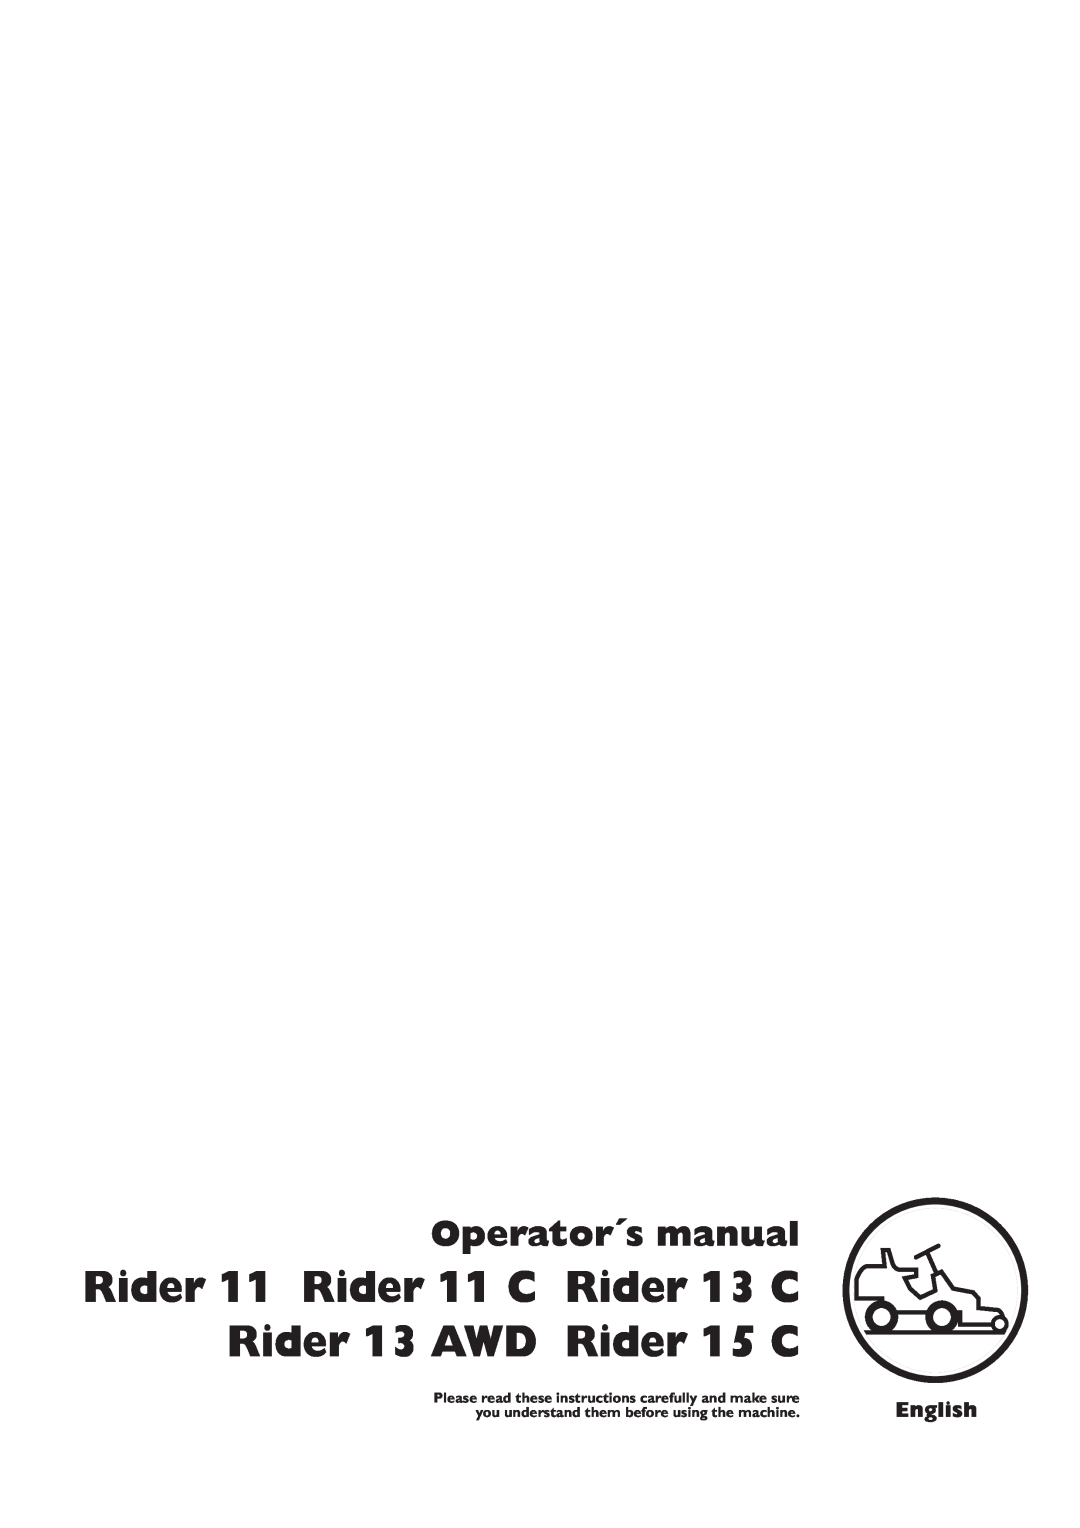 Husqvarna manual Rider 11 Rider 11 C Rider 13 C Rider 13 AWD Rider 15 C, Operator´s manual, English 